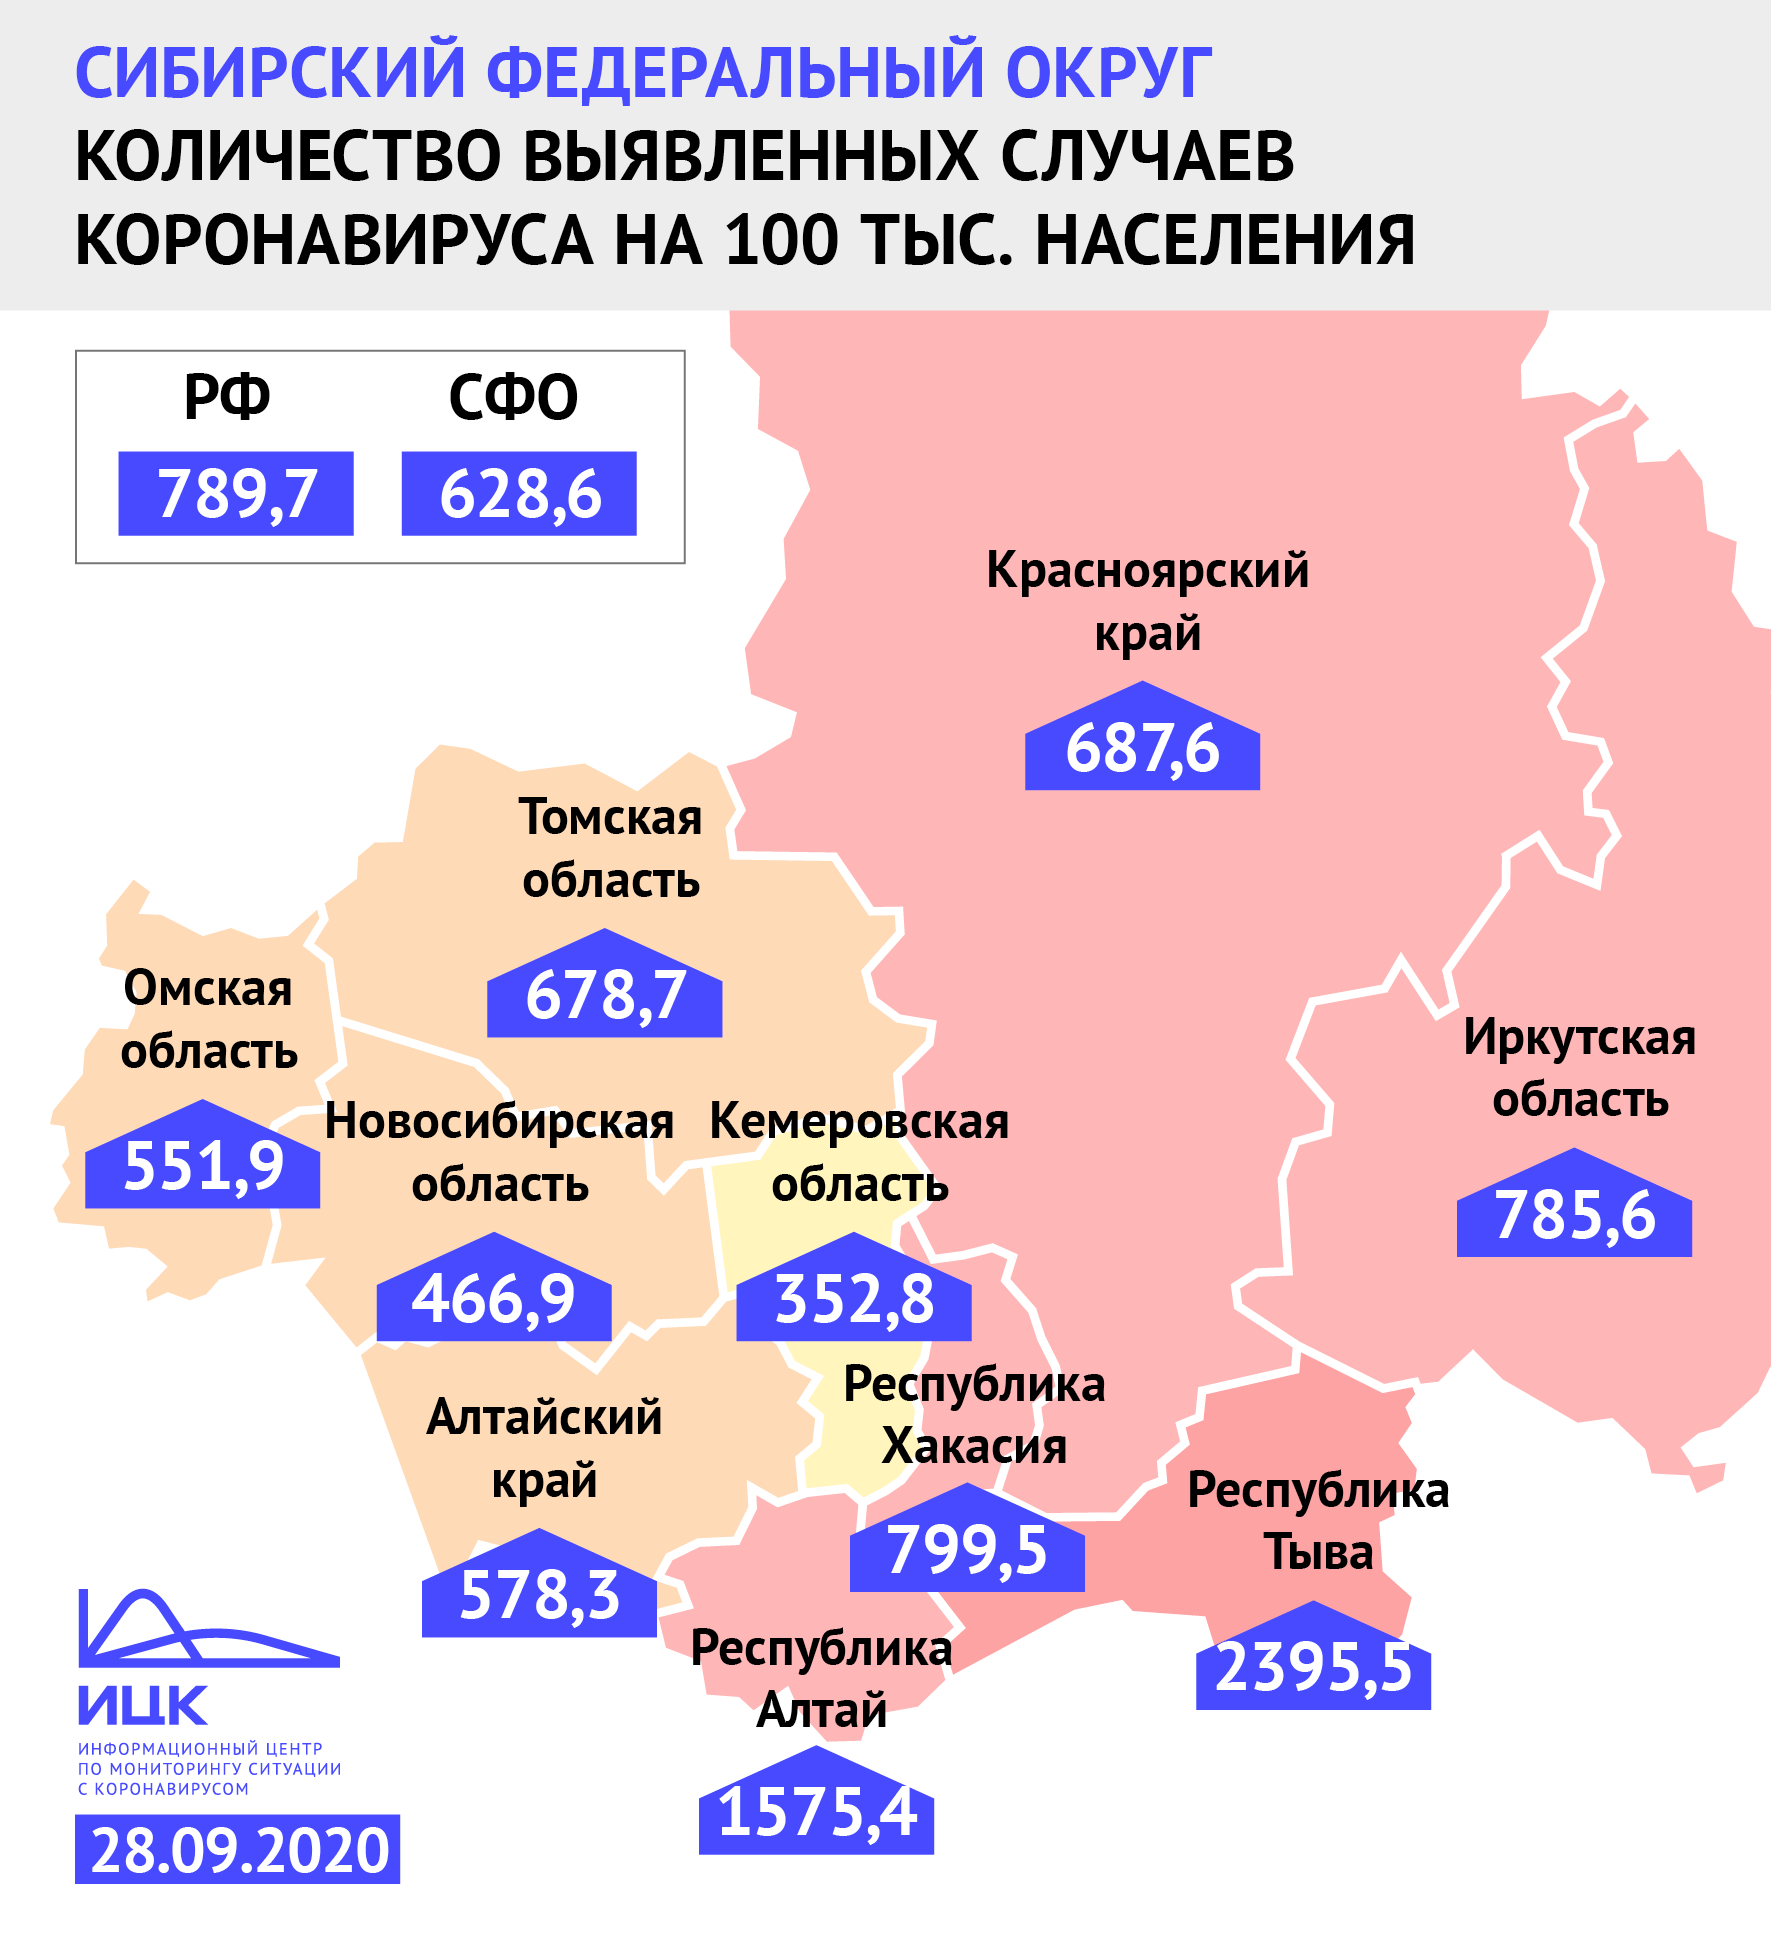 Новосибирская область осталась в числе благополучных по COVID-19 регионов